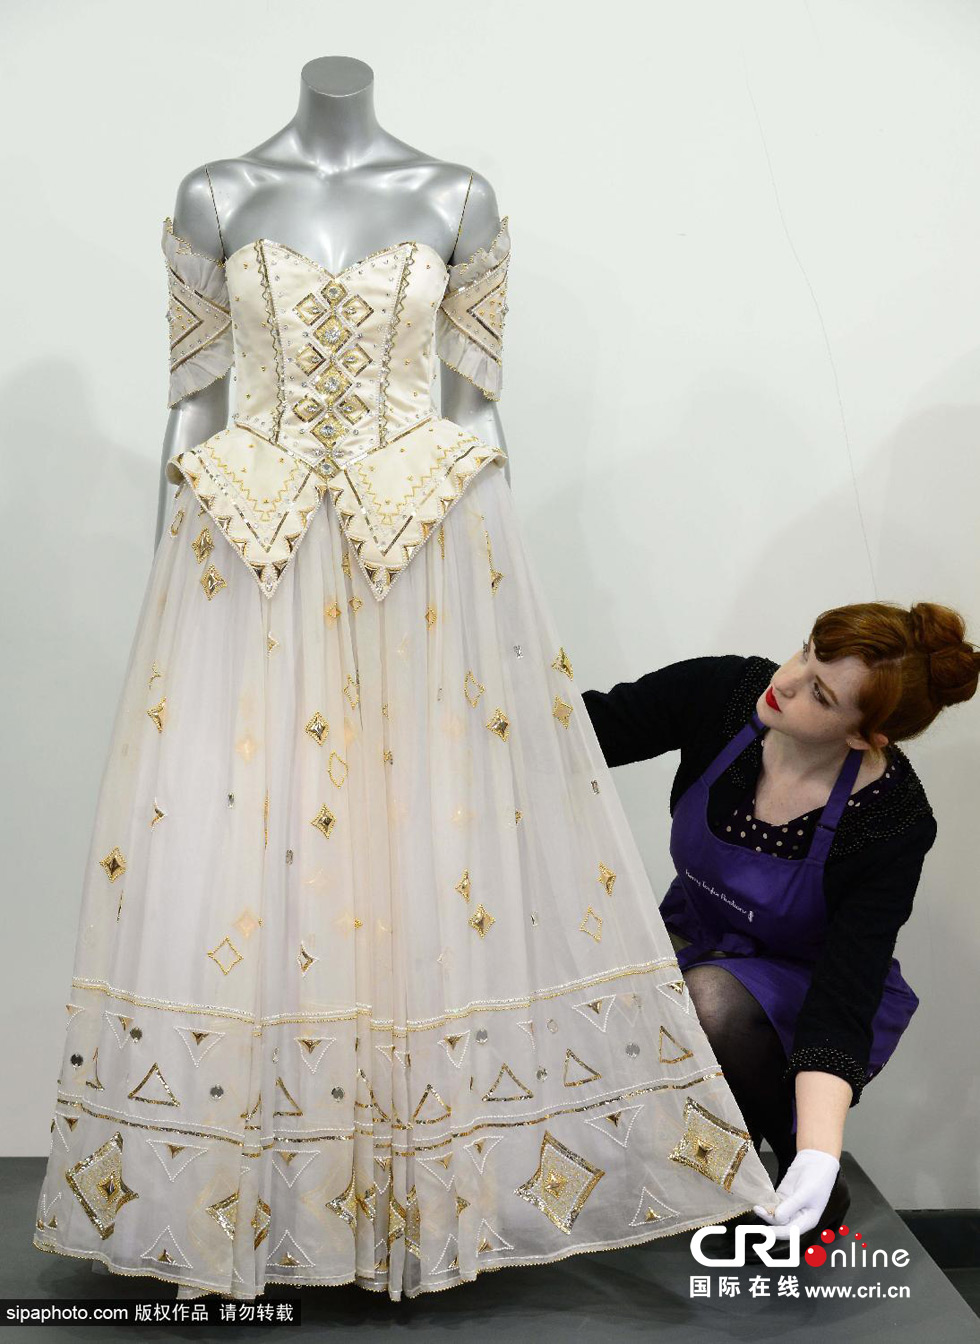 2013年12月3日，英国戴安娜王妃生前最喜爱的一条晚礼服裙在凯莉-泰勒拍卖行进行拍卖，预计售价为8万英镑。